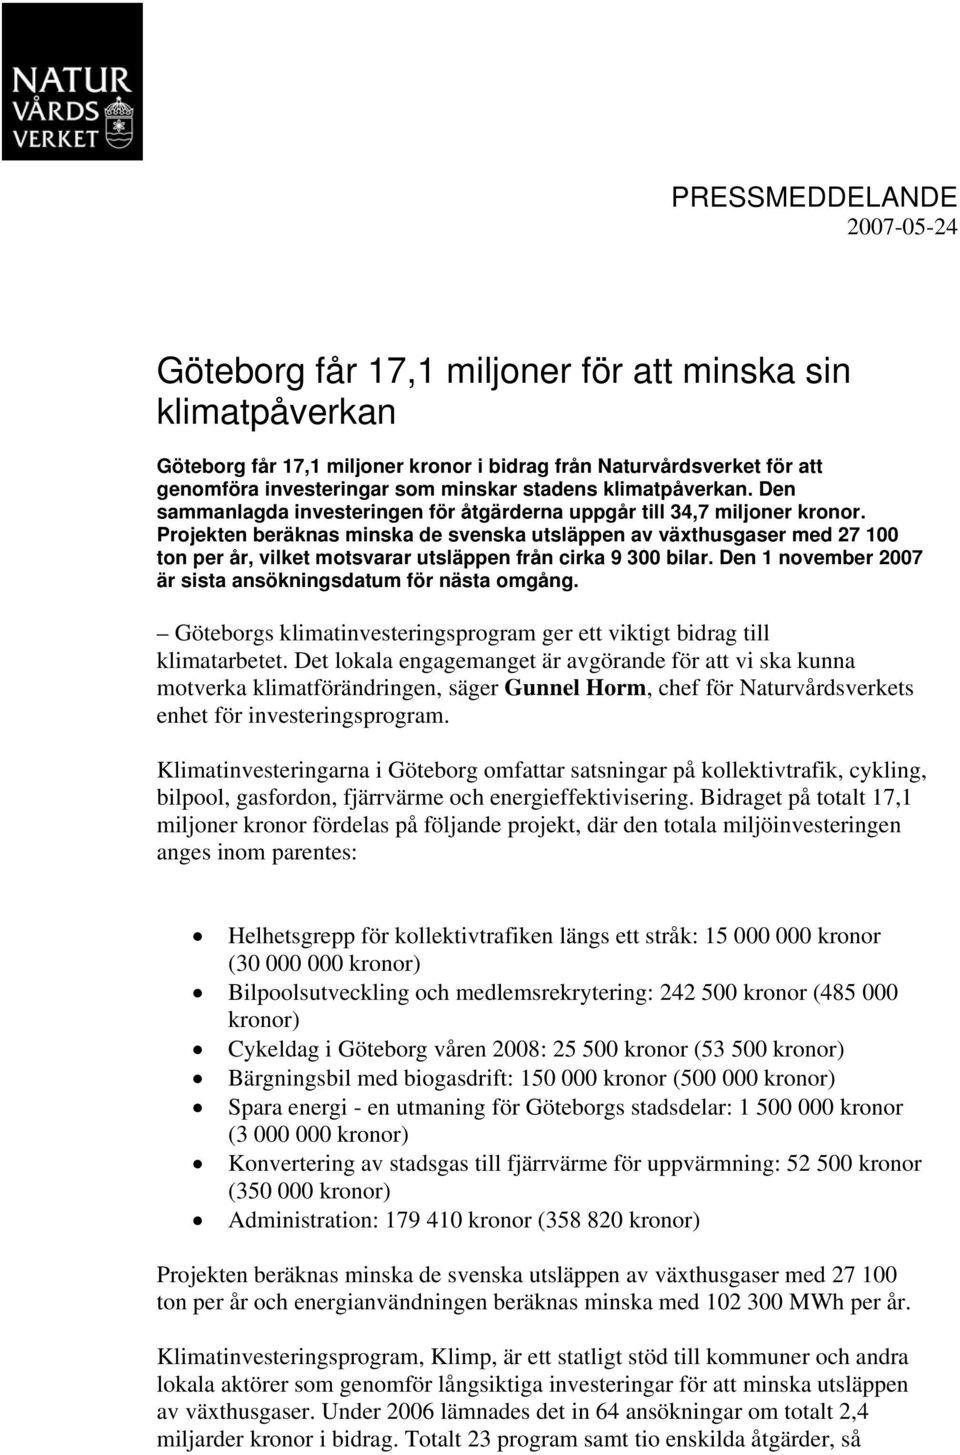 Projekten beräknas minska de svenska utsläppen av växthusgaser med 27 100 ton per år, vilket motsvarar utsläppen från cirka 9 300 bilar. Den 1 november 2007 är sista ansökningsdatum för nästa omgång.